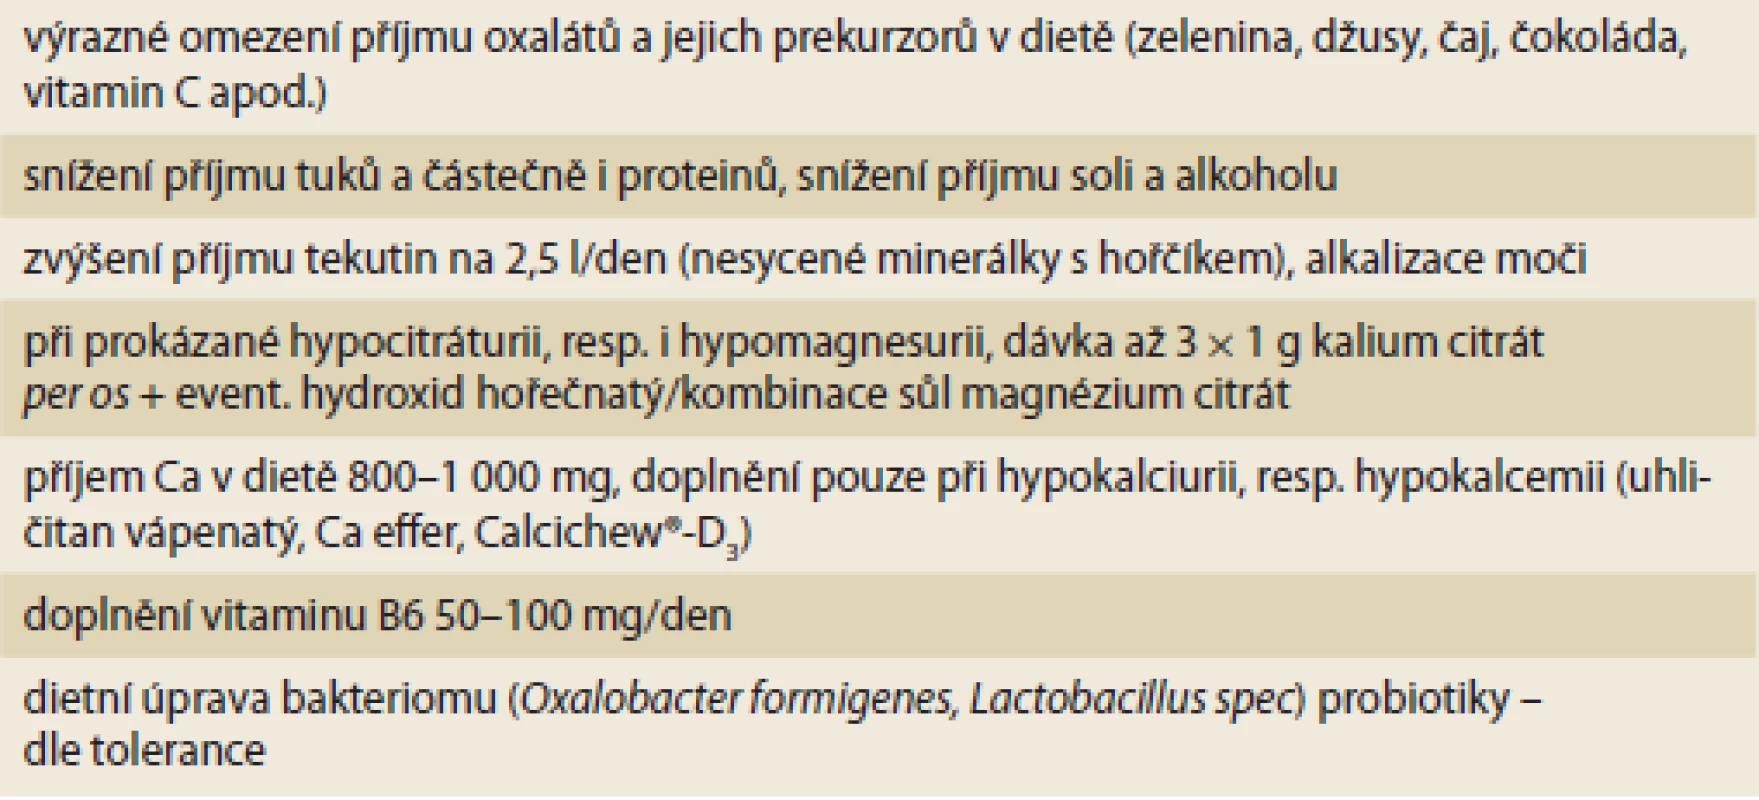 Dietní opatření v prevenci a léčbě urolitiázy u IBD.
Tab. 3. Dietary measures in the prevention and treatment of urolithiasis in IBD.